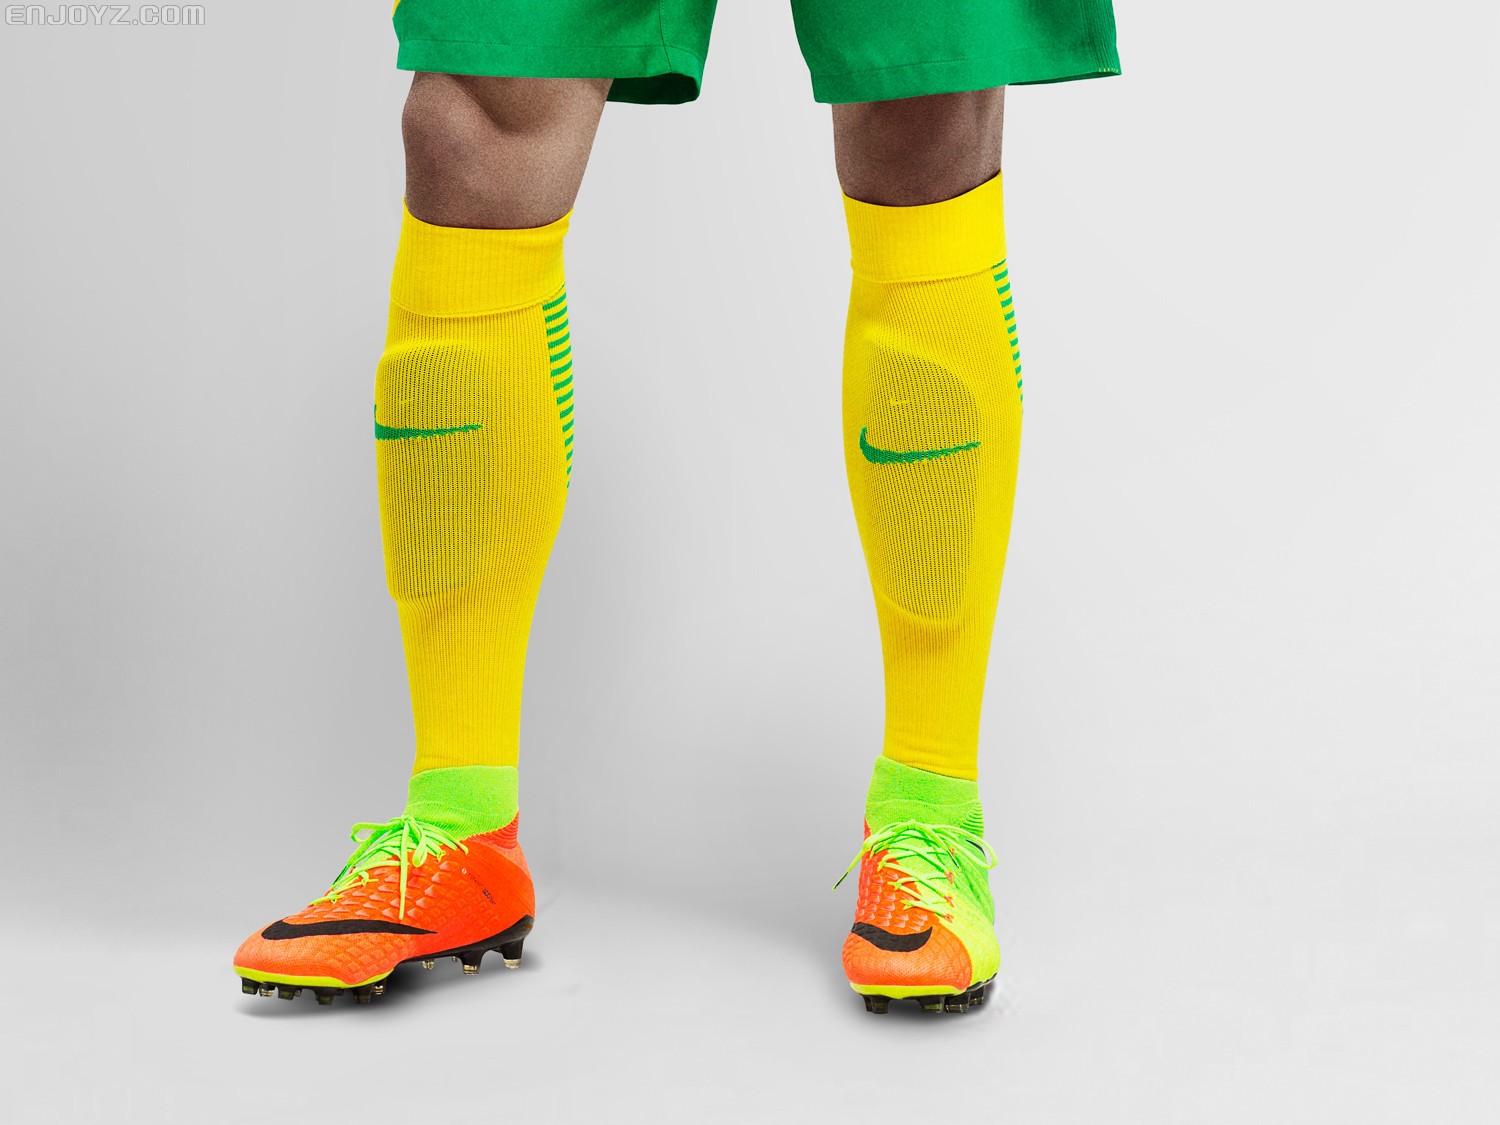 Nike发布2017赛季中超北上广四队主场球衣 - 